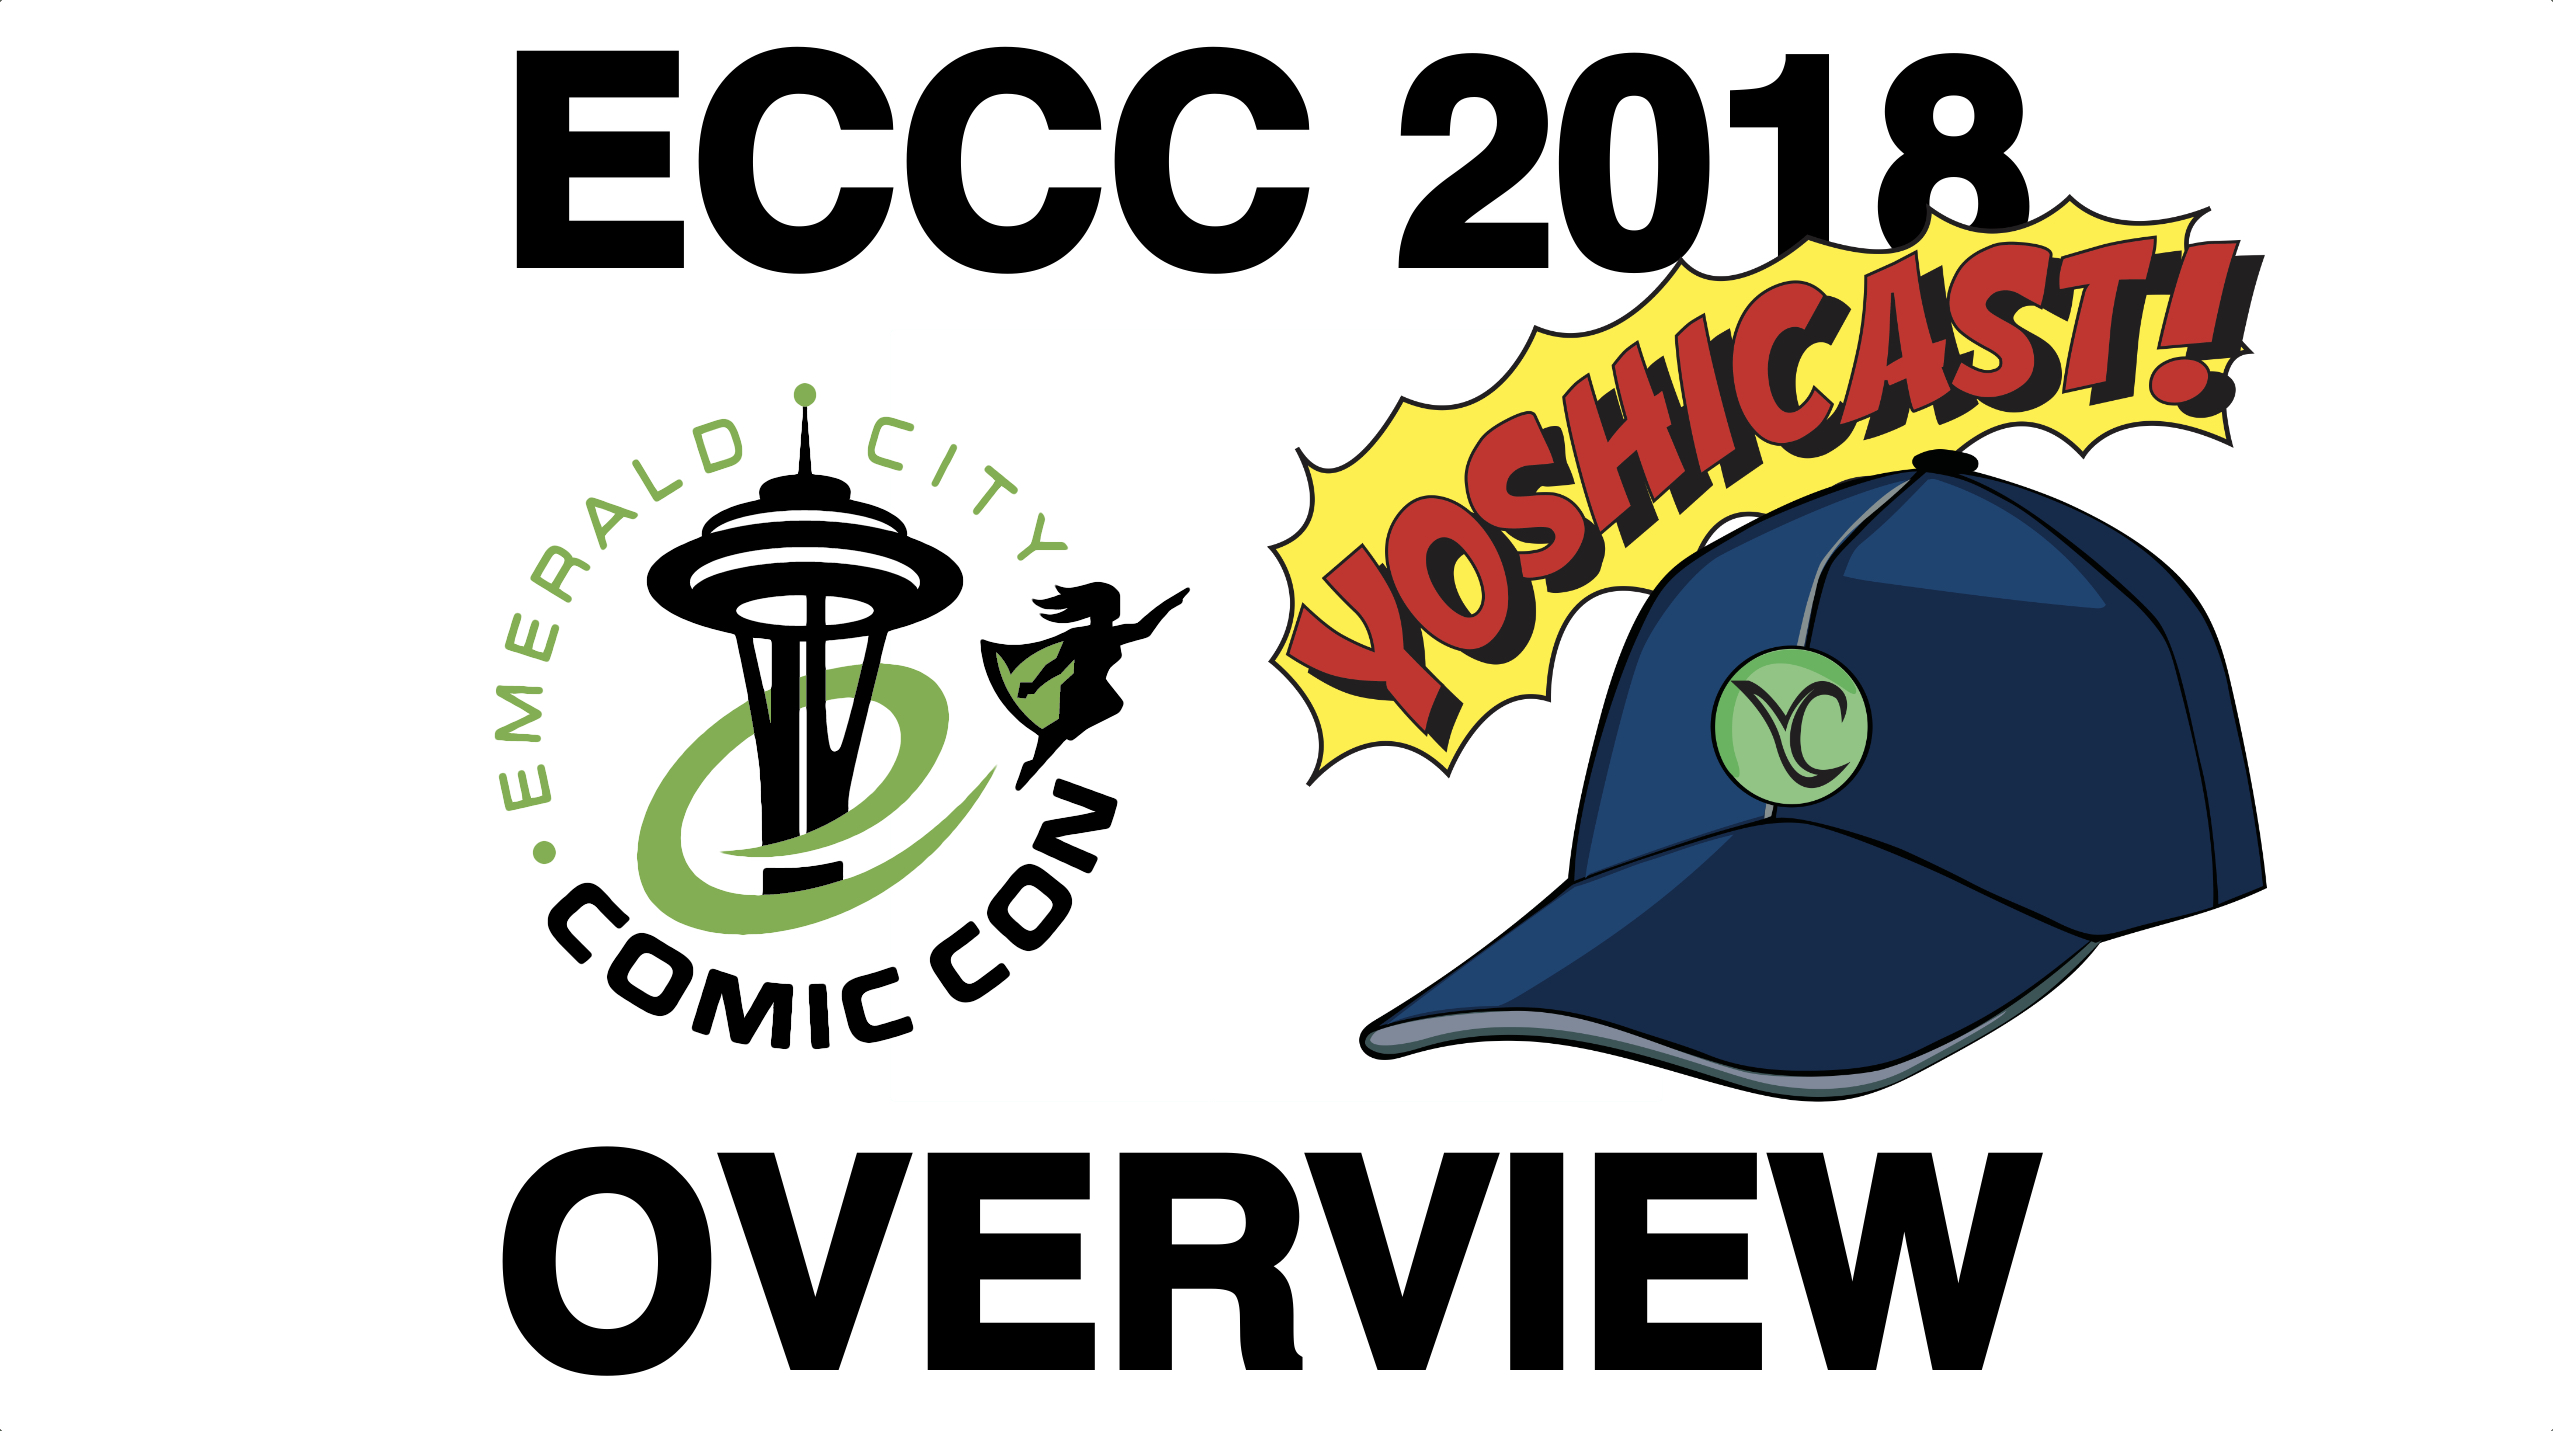 Emerald City Comic Con 2018